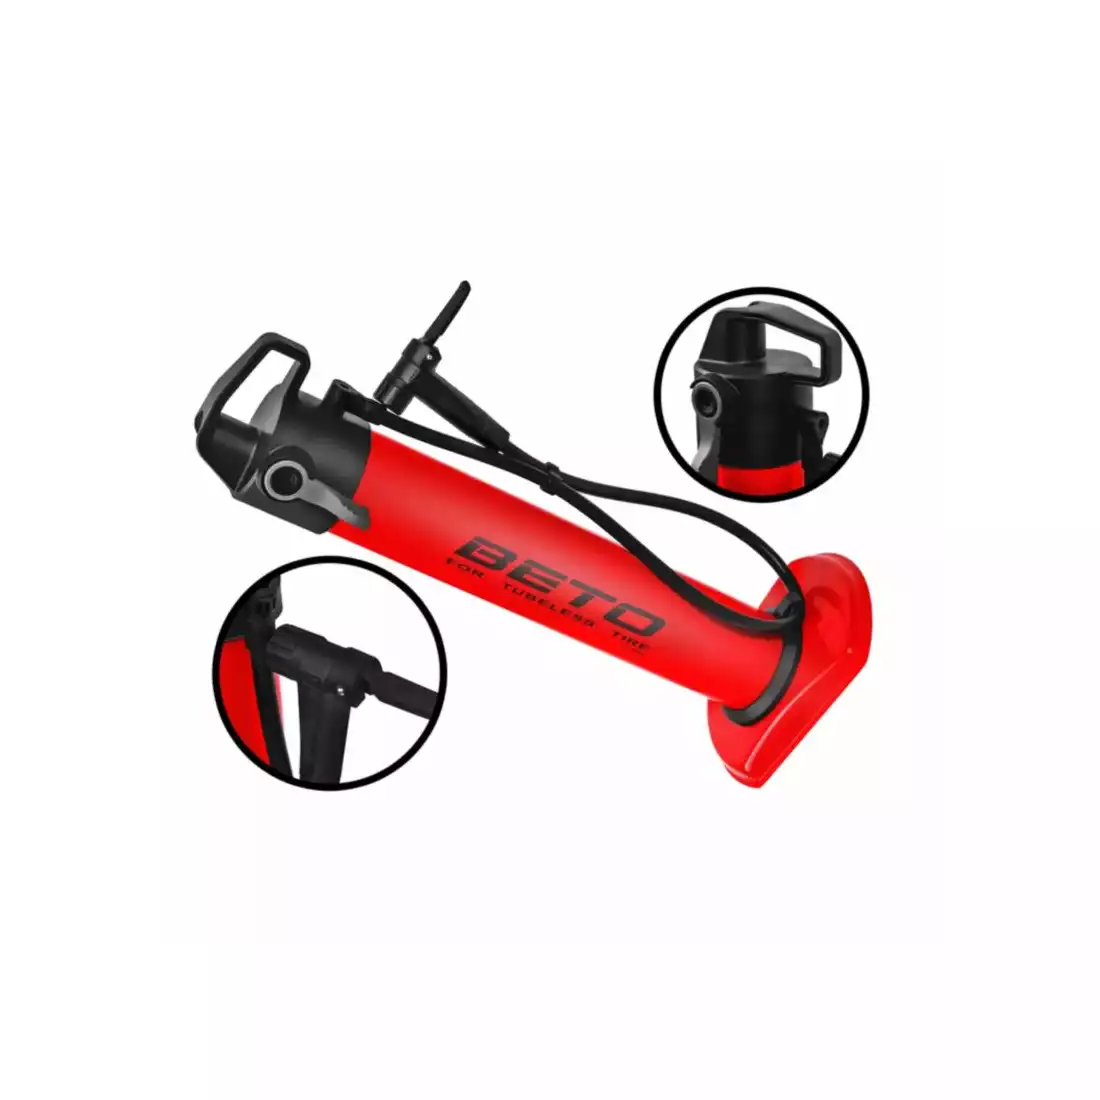 BETO CJA-001S floor pump, tubeless cartridge 11 BAR/160 PSI, red